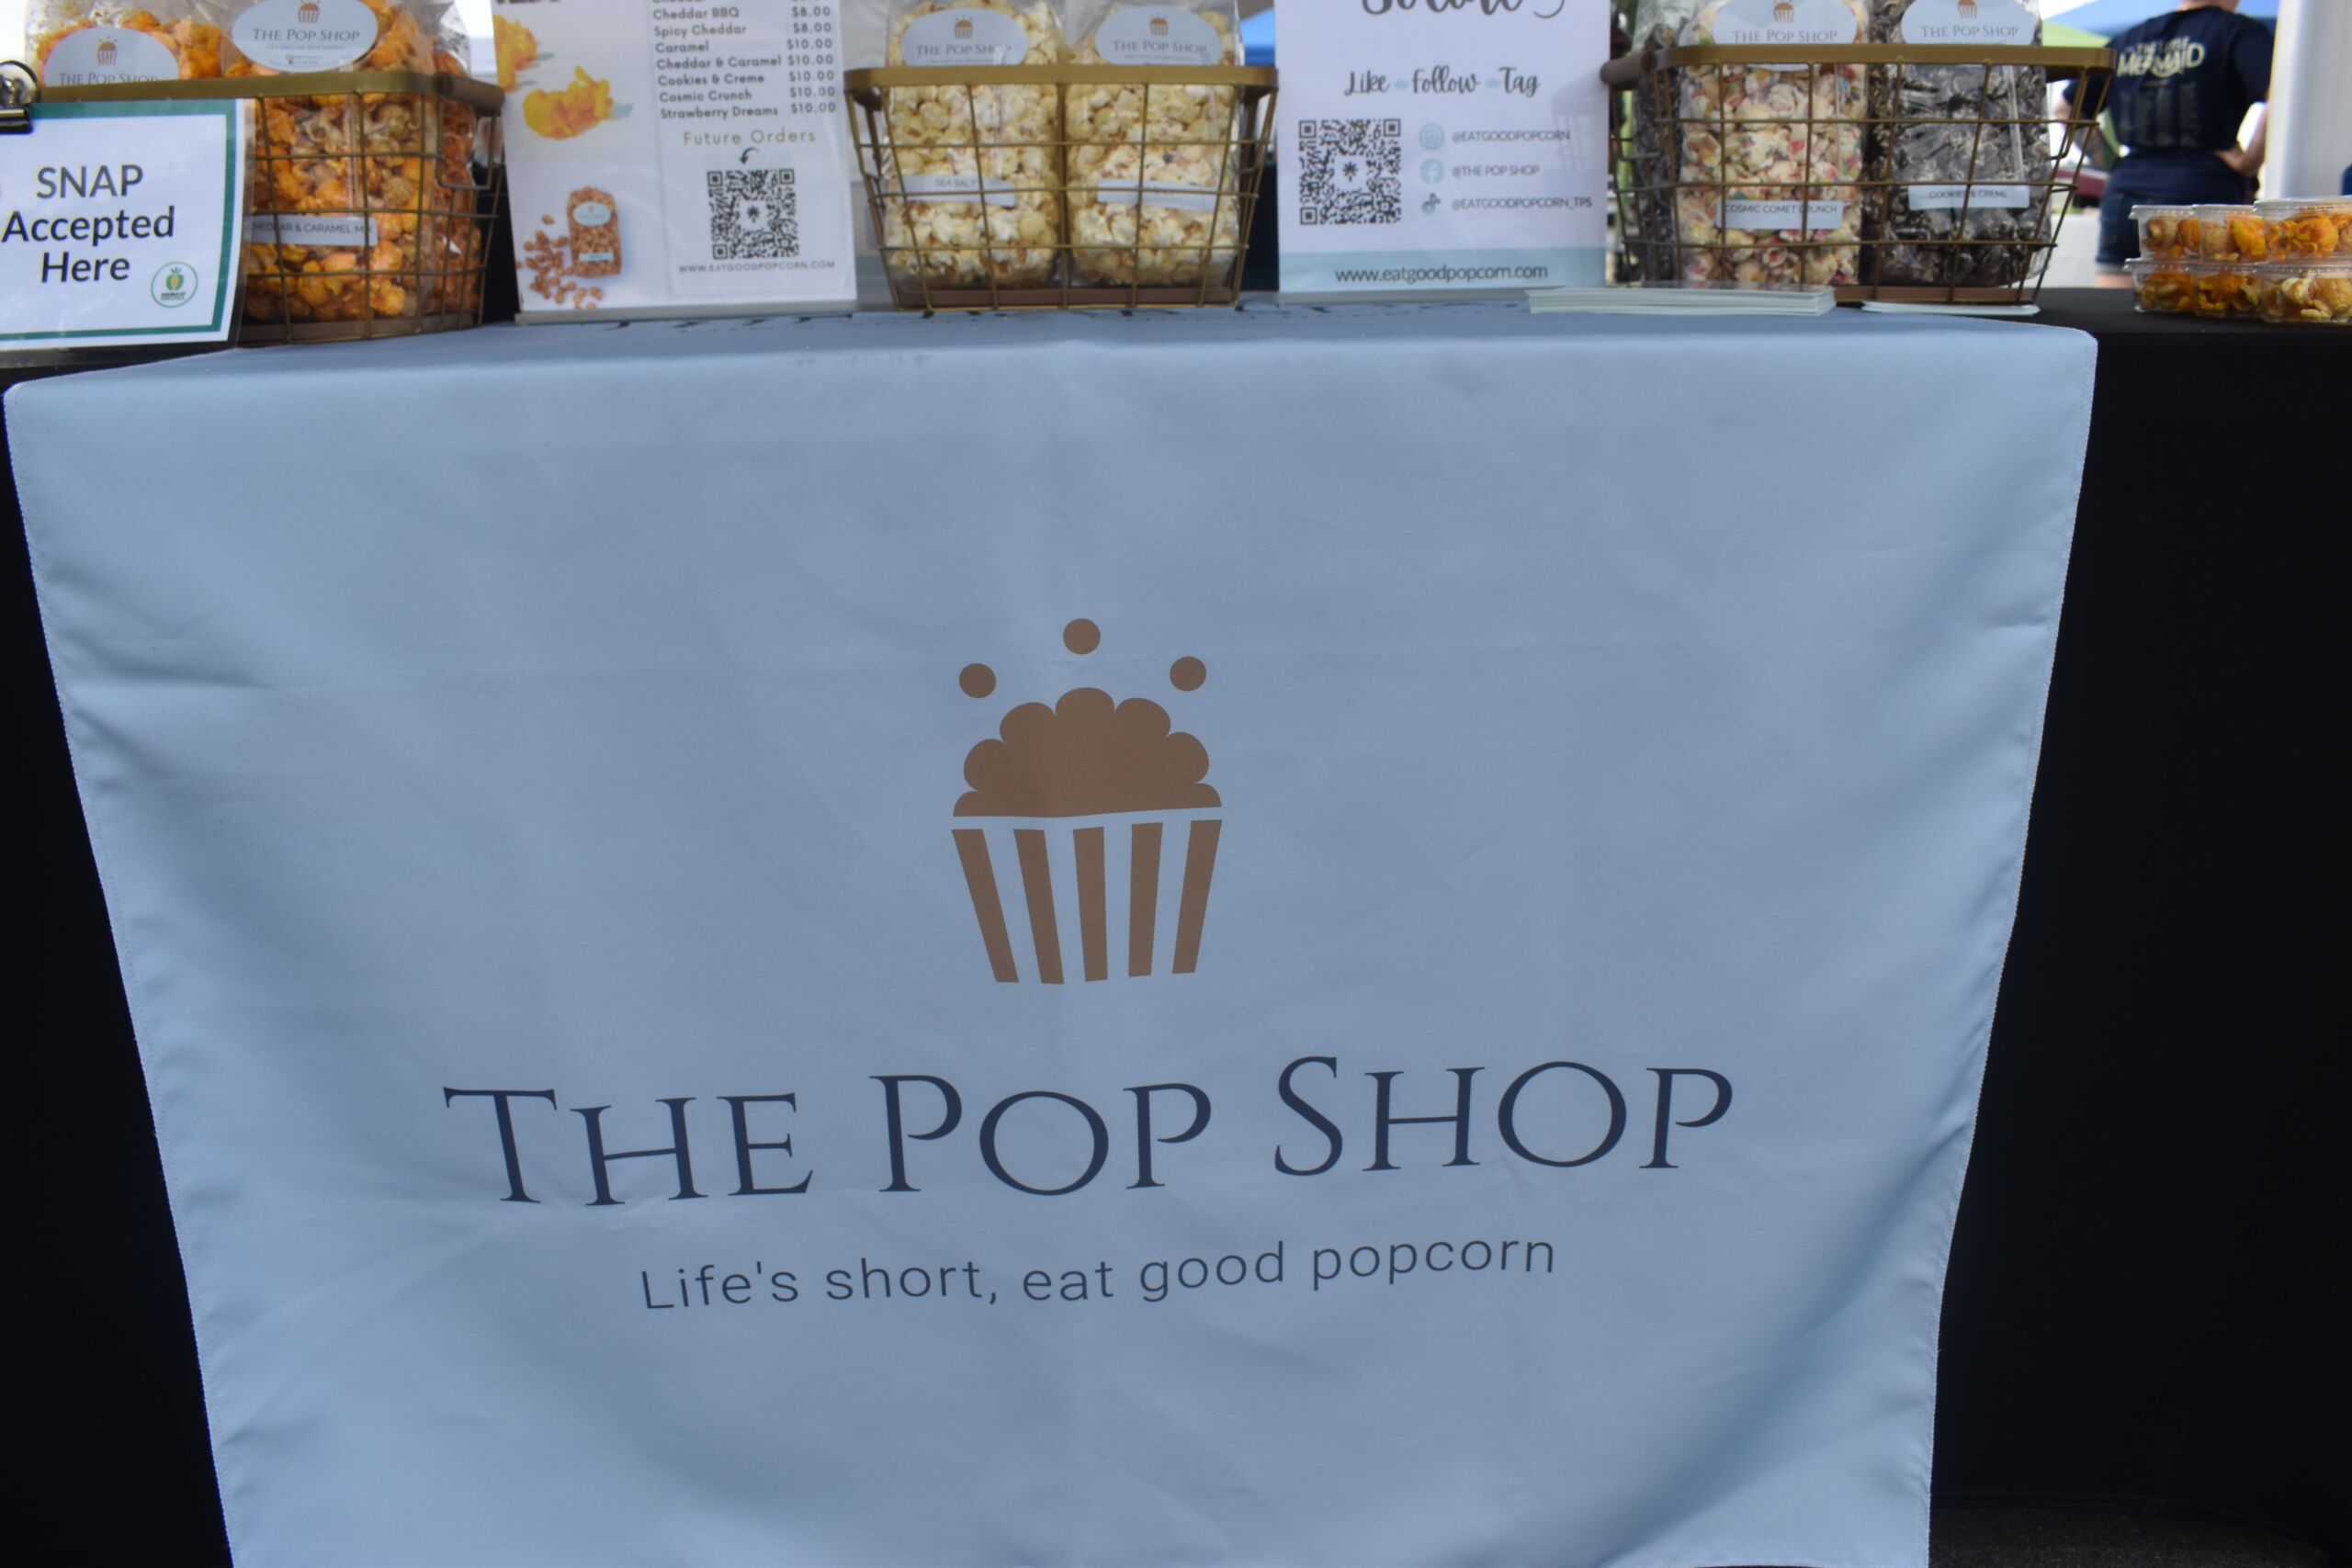 The Pop Shop Sign